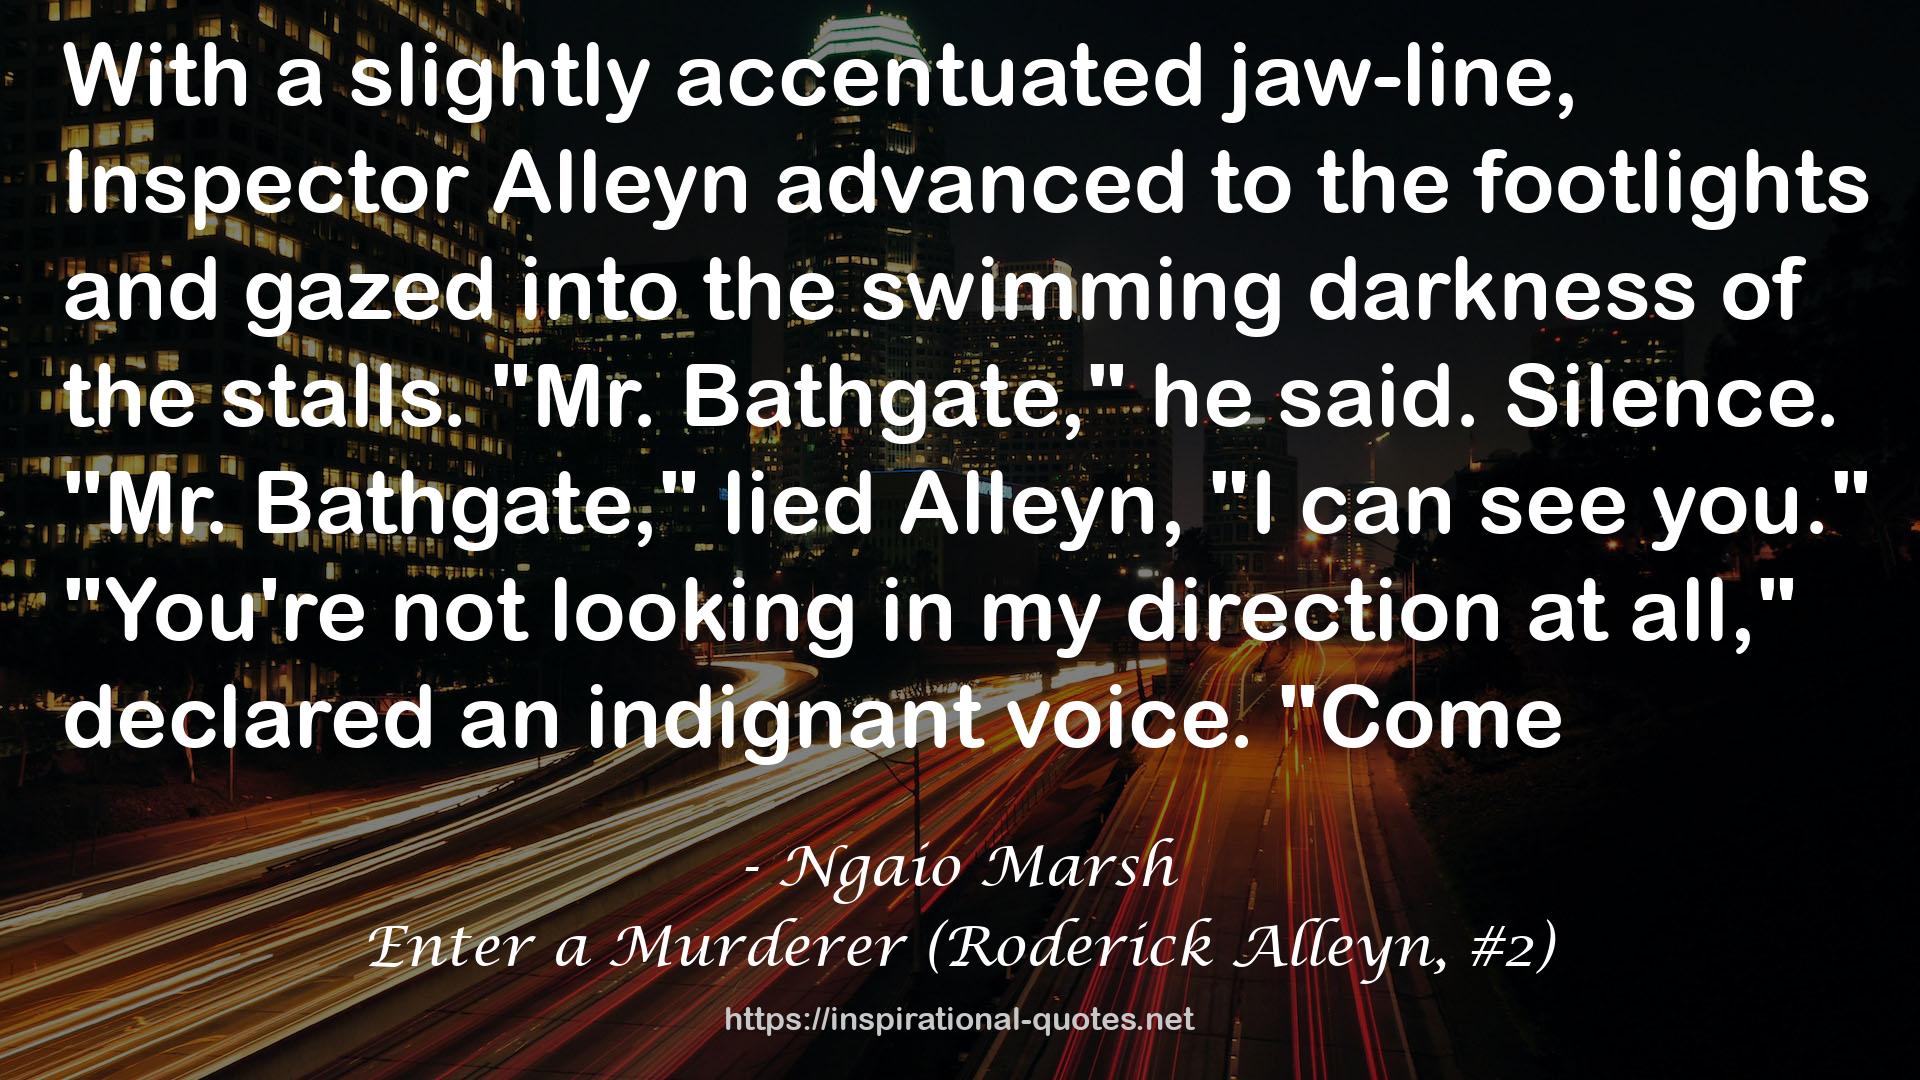 Enter a Murderer (Roderick Alleyn, #2) QUOTES